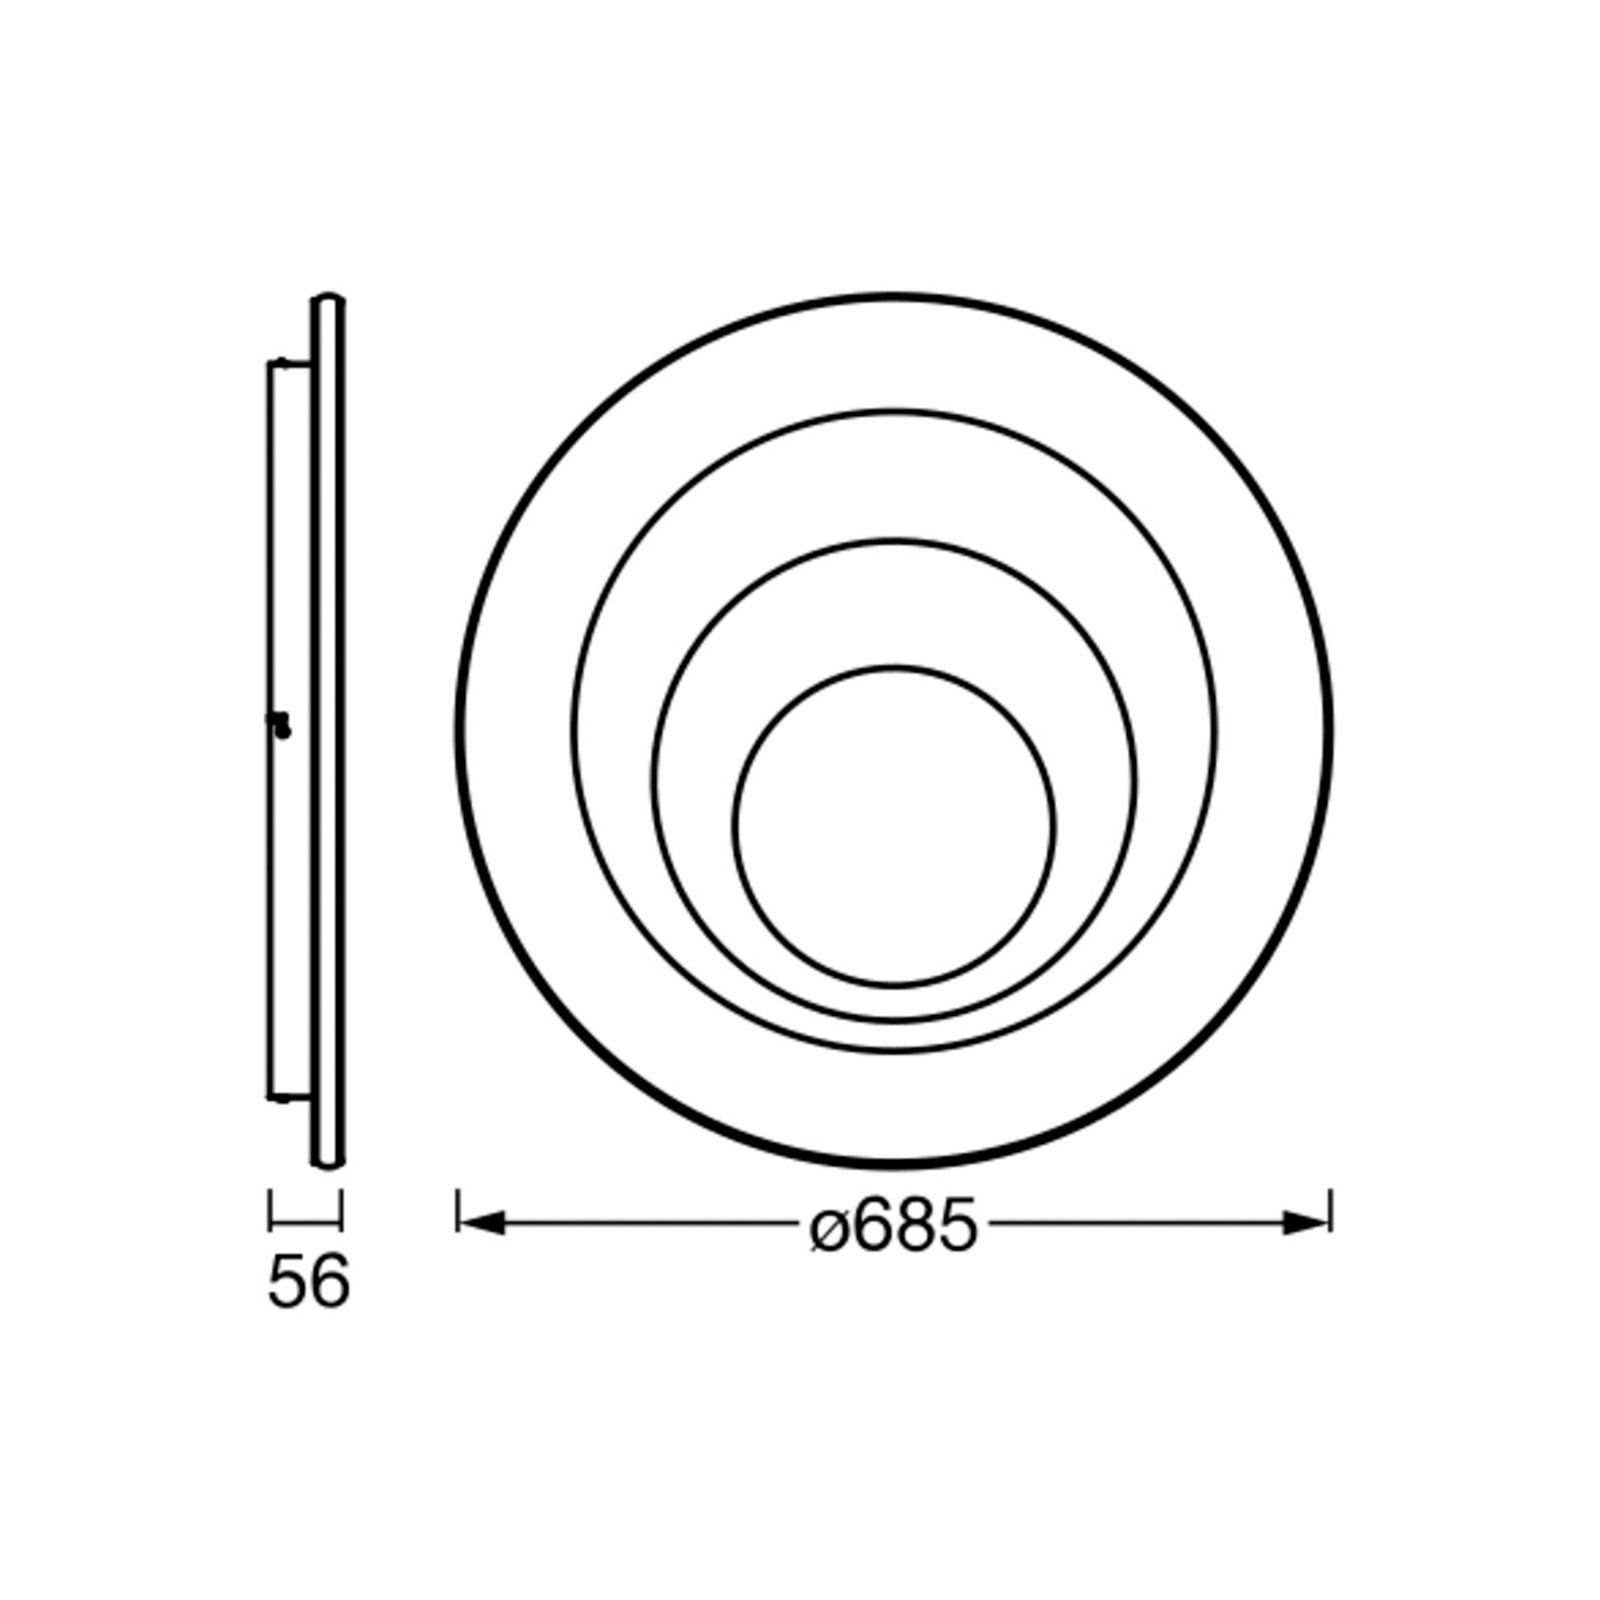 LEDVANCE Orbis Spiral Round plafoniera Ø68,5 cm